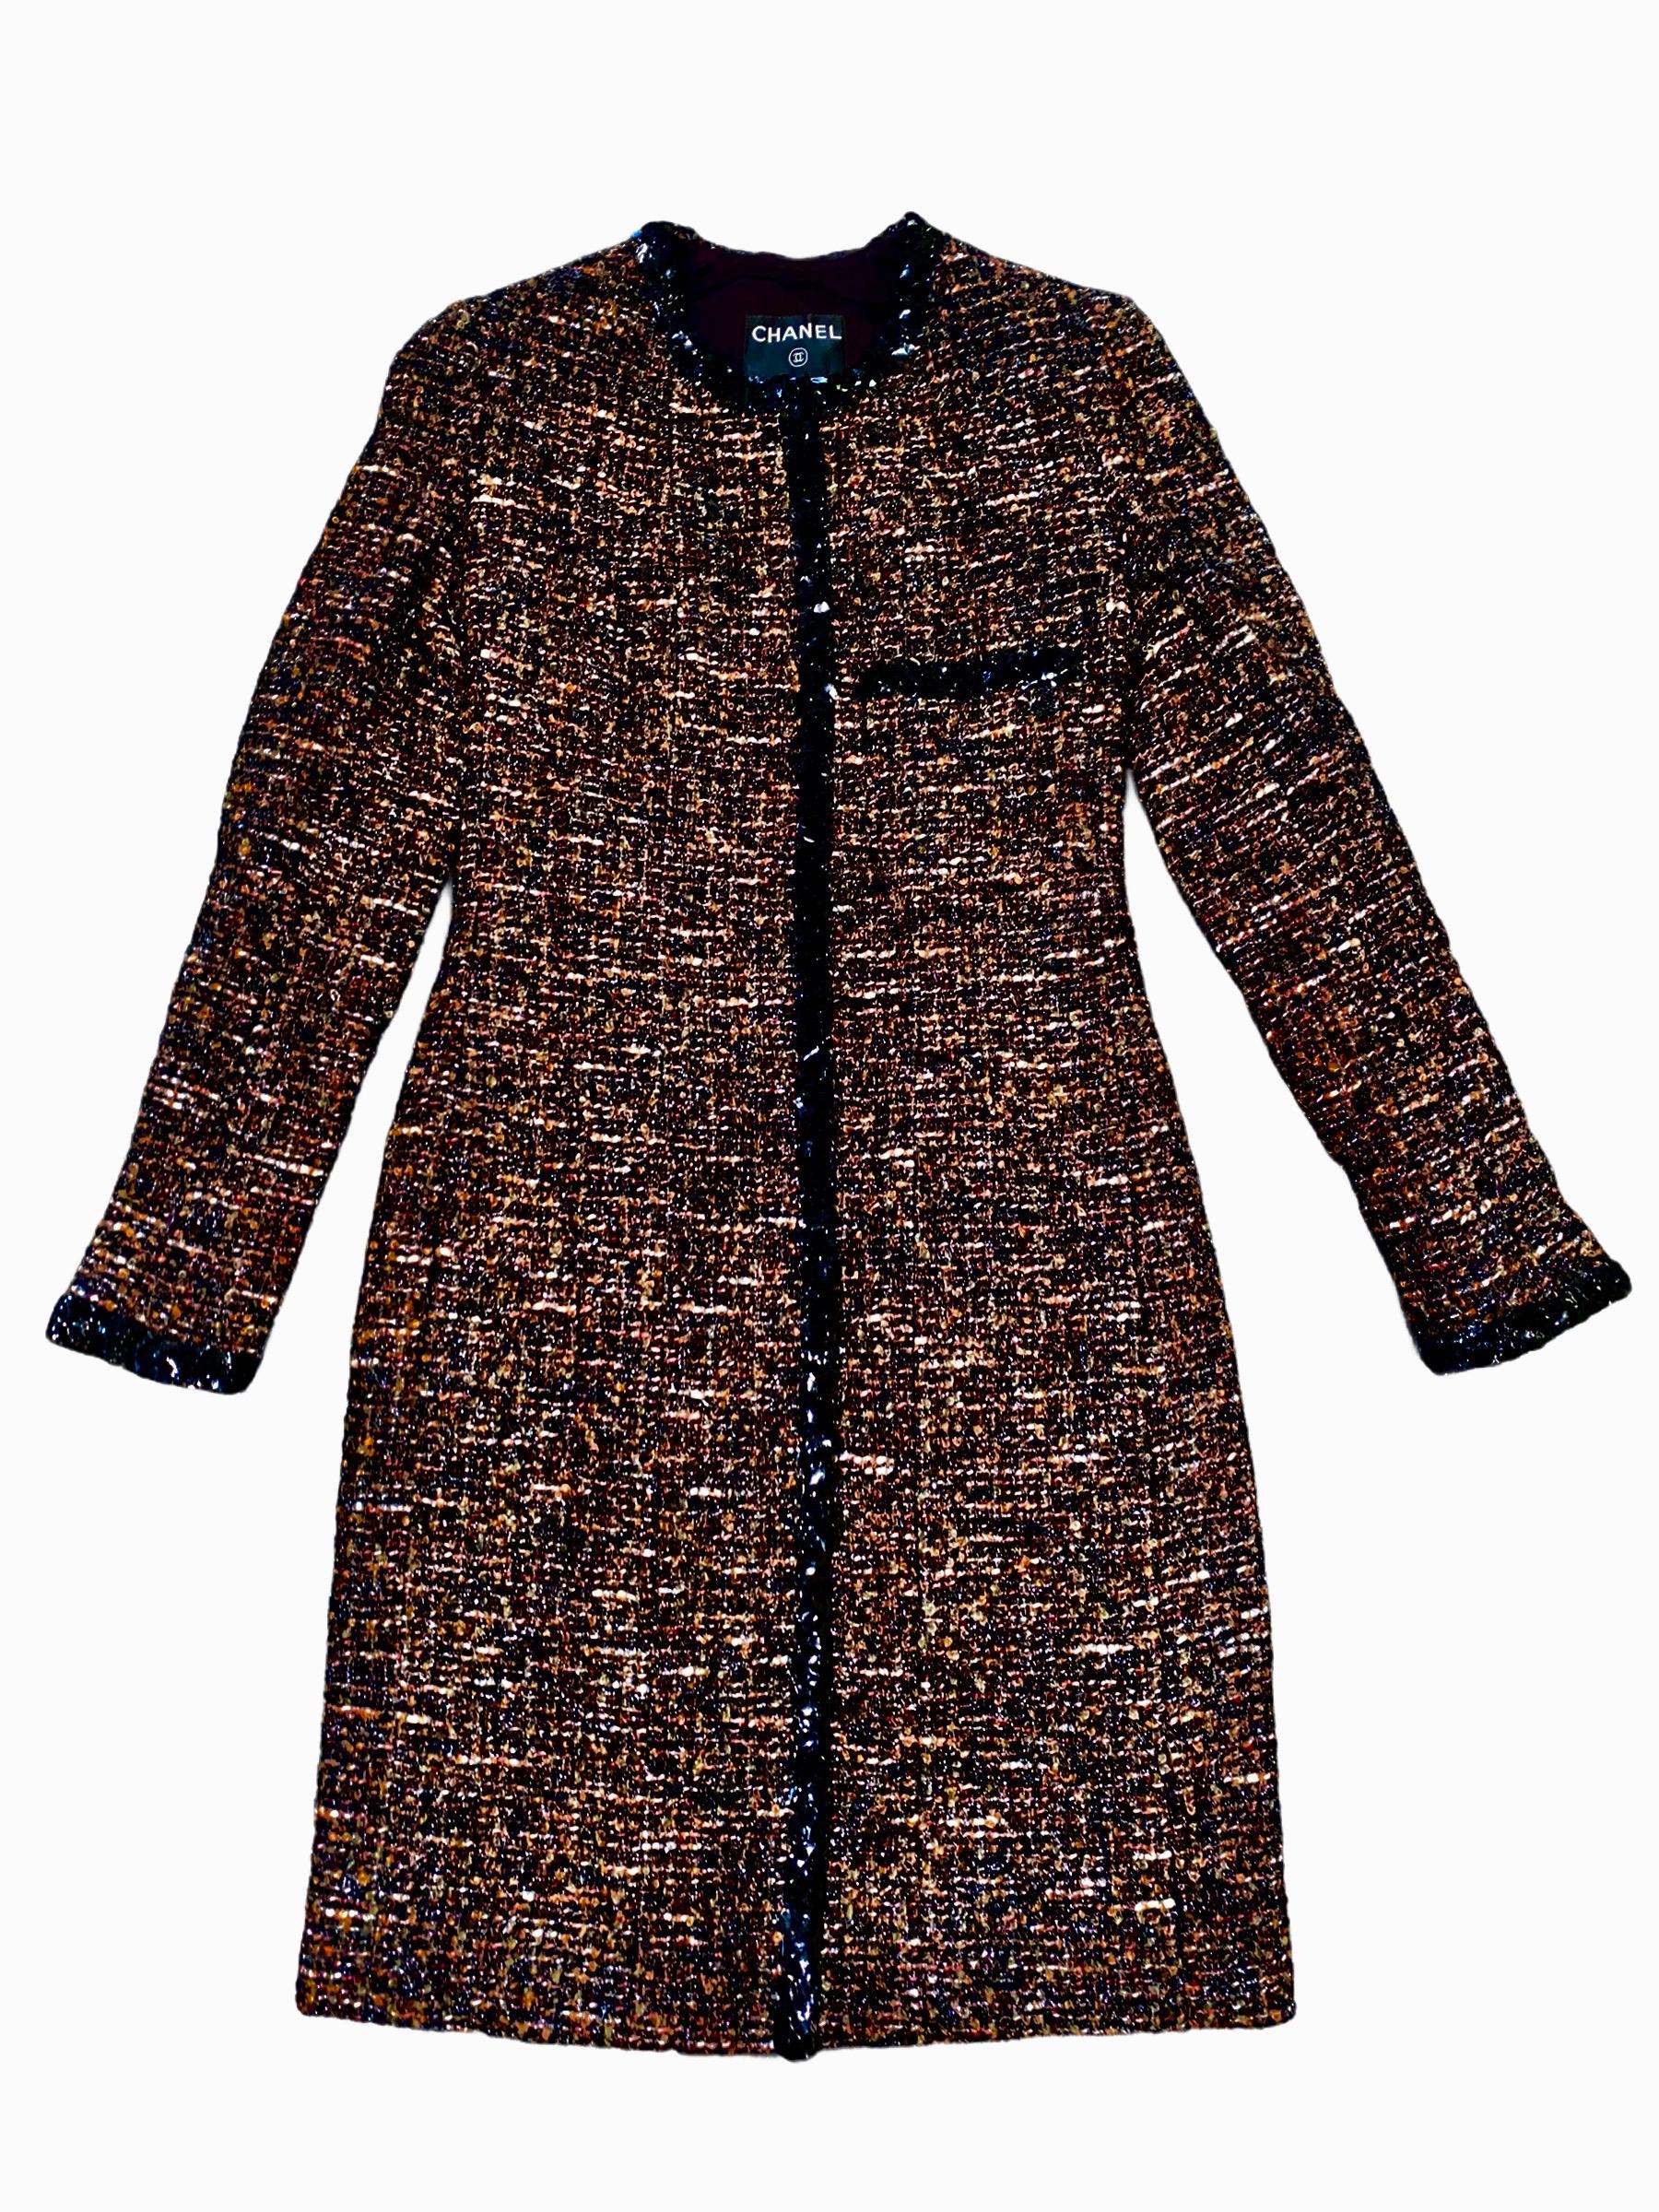 UNWORN Chanel Metallic Lesage Fantasy Tweed Sequin Trimmed Coat  9